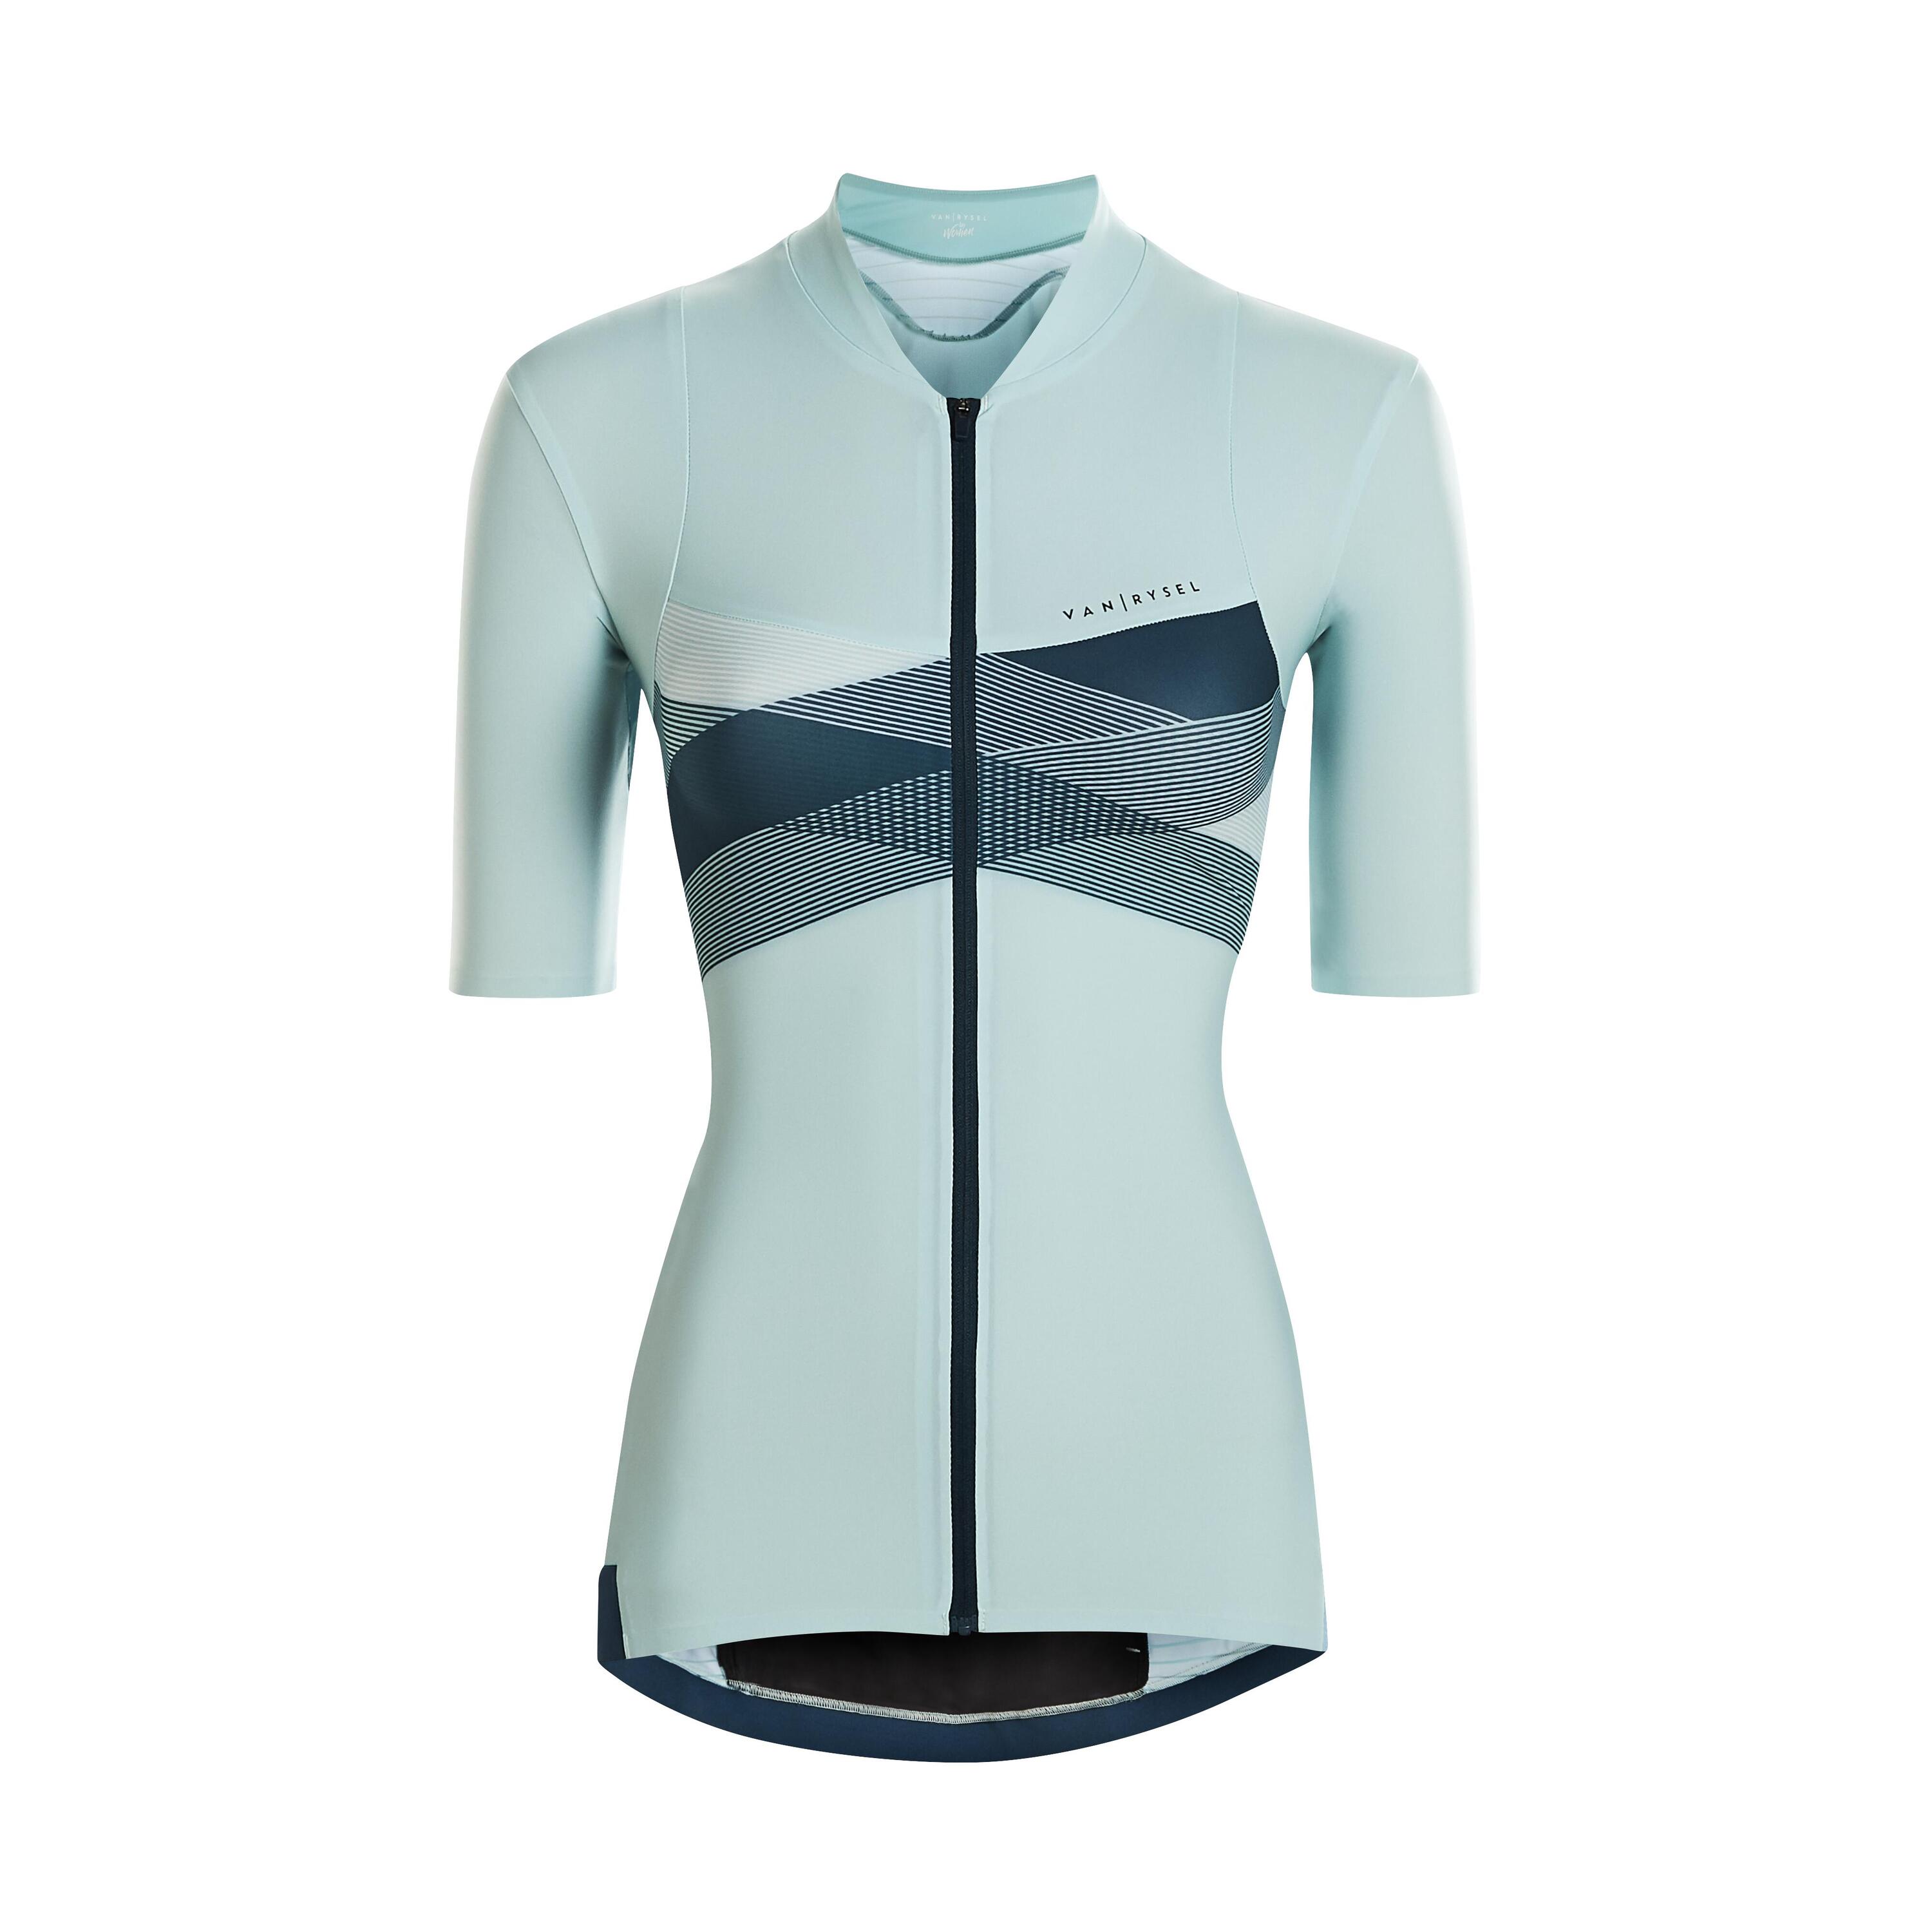 Women's Cycling Short-Sleeved Jersey RCR - Mint/Cross 2/5